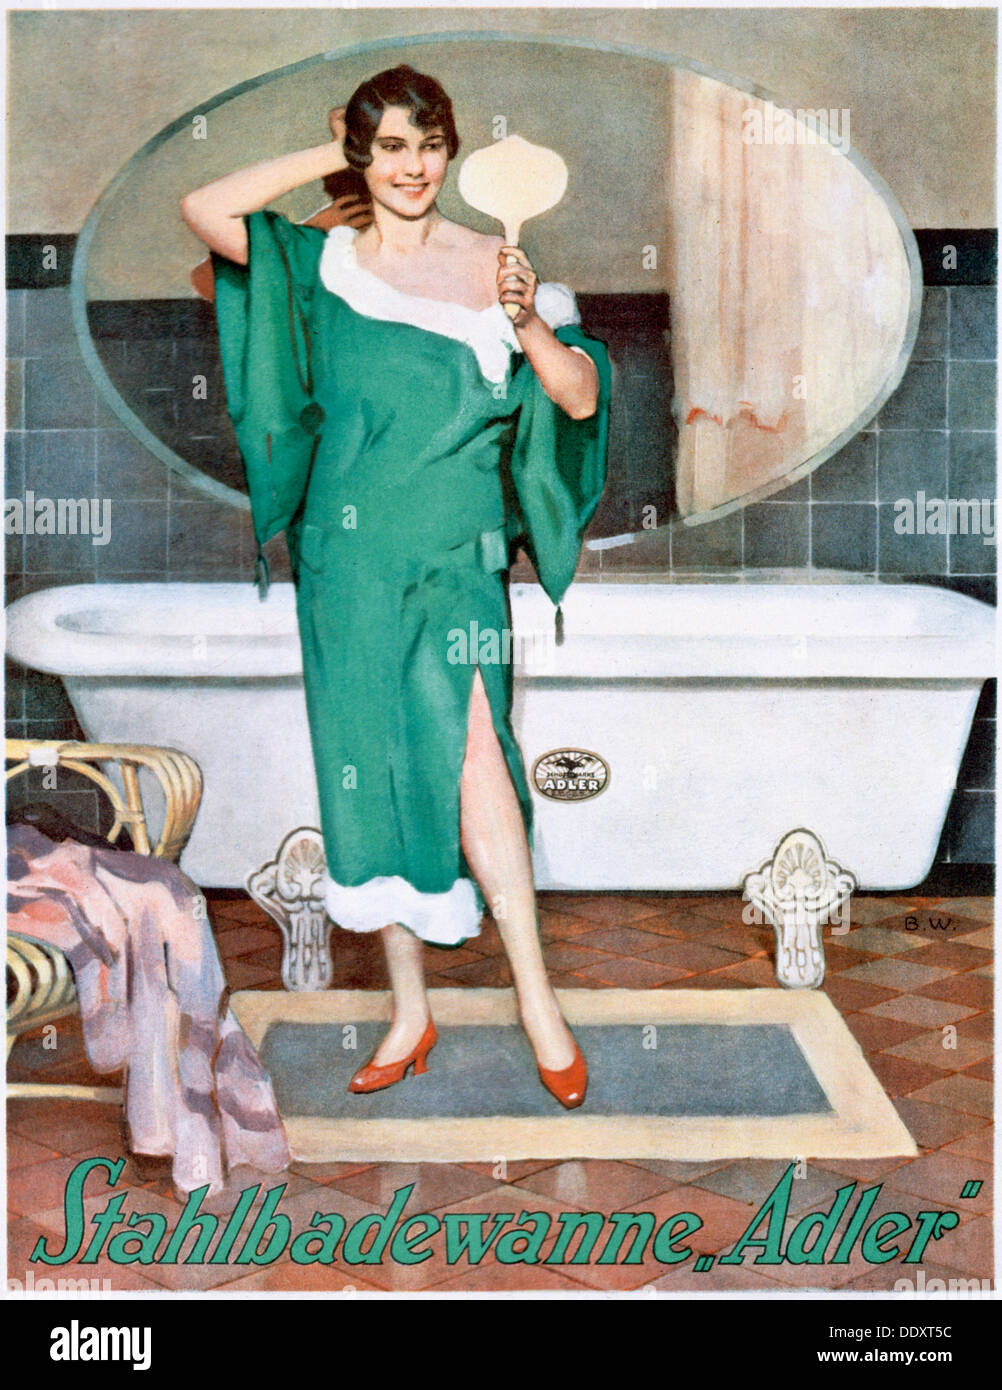 El anuncio de la alemana "Adler", bañeras de acero del siglo XX. Artista: Desconocido Foto de stock